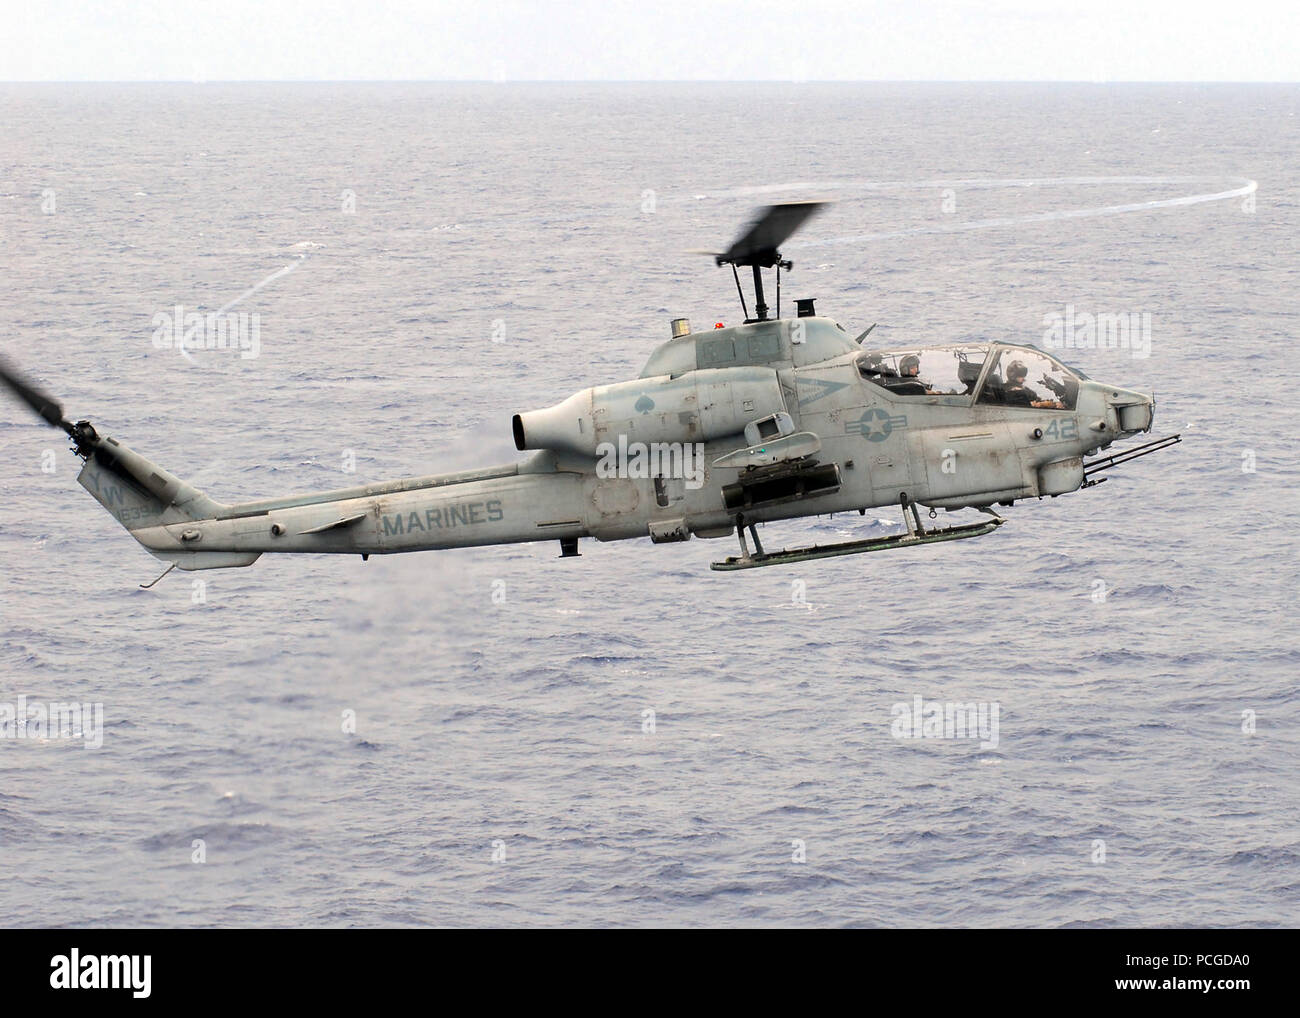 Un Corps des Marines américains AH-1W Super Cobra vole au-dessus de l'océan Pacifique le 17 octobre 2008, à l'envol du navire d'assaut de classe Tarawa USS Peleliu (LHA 5). Peleliu est déployée dans la 7e Flotte des États-Unis zone de responsabilité. Banque D'Images